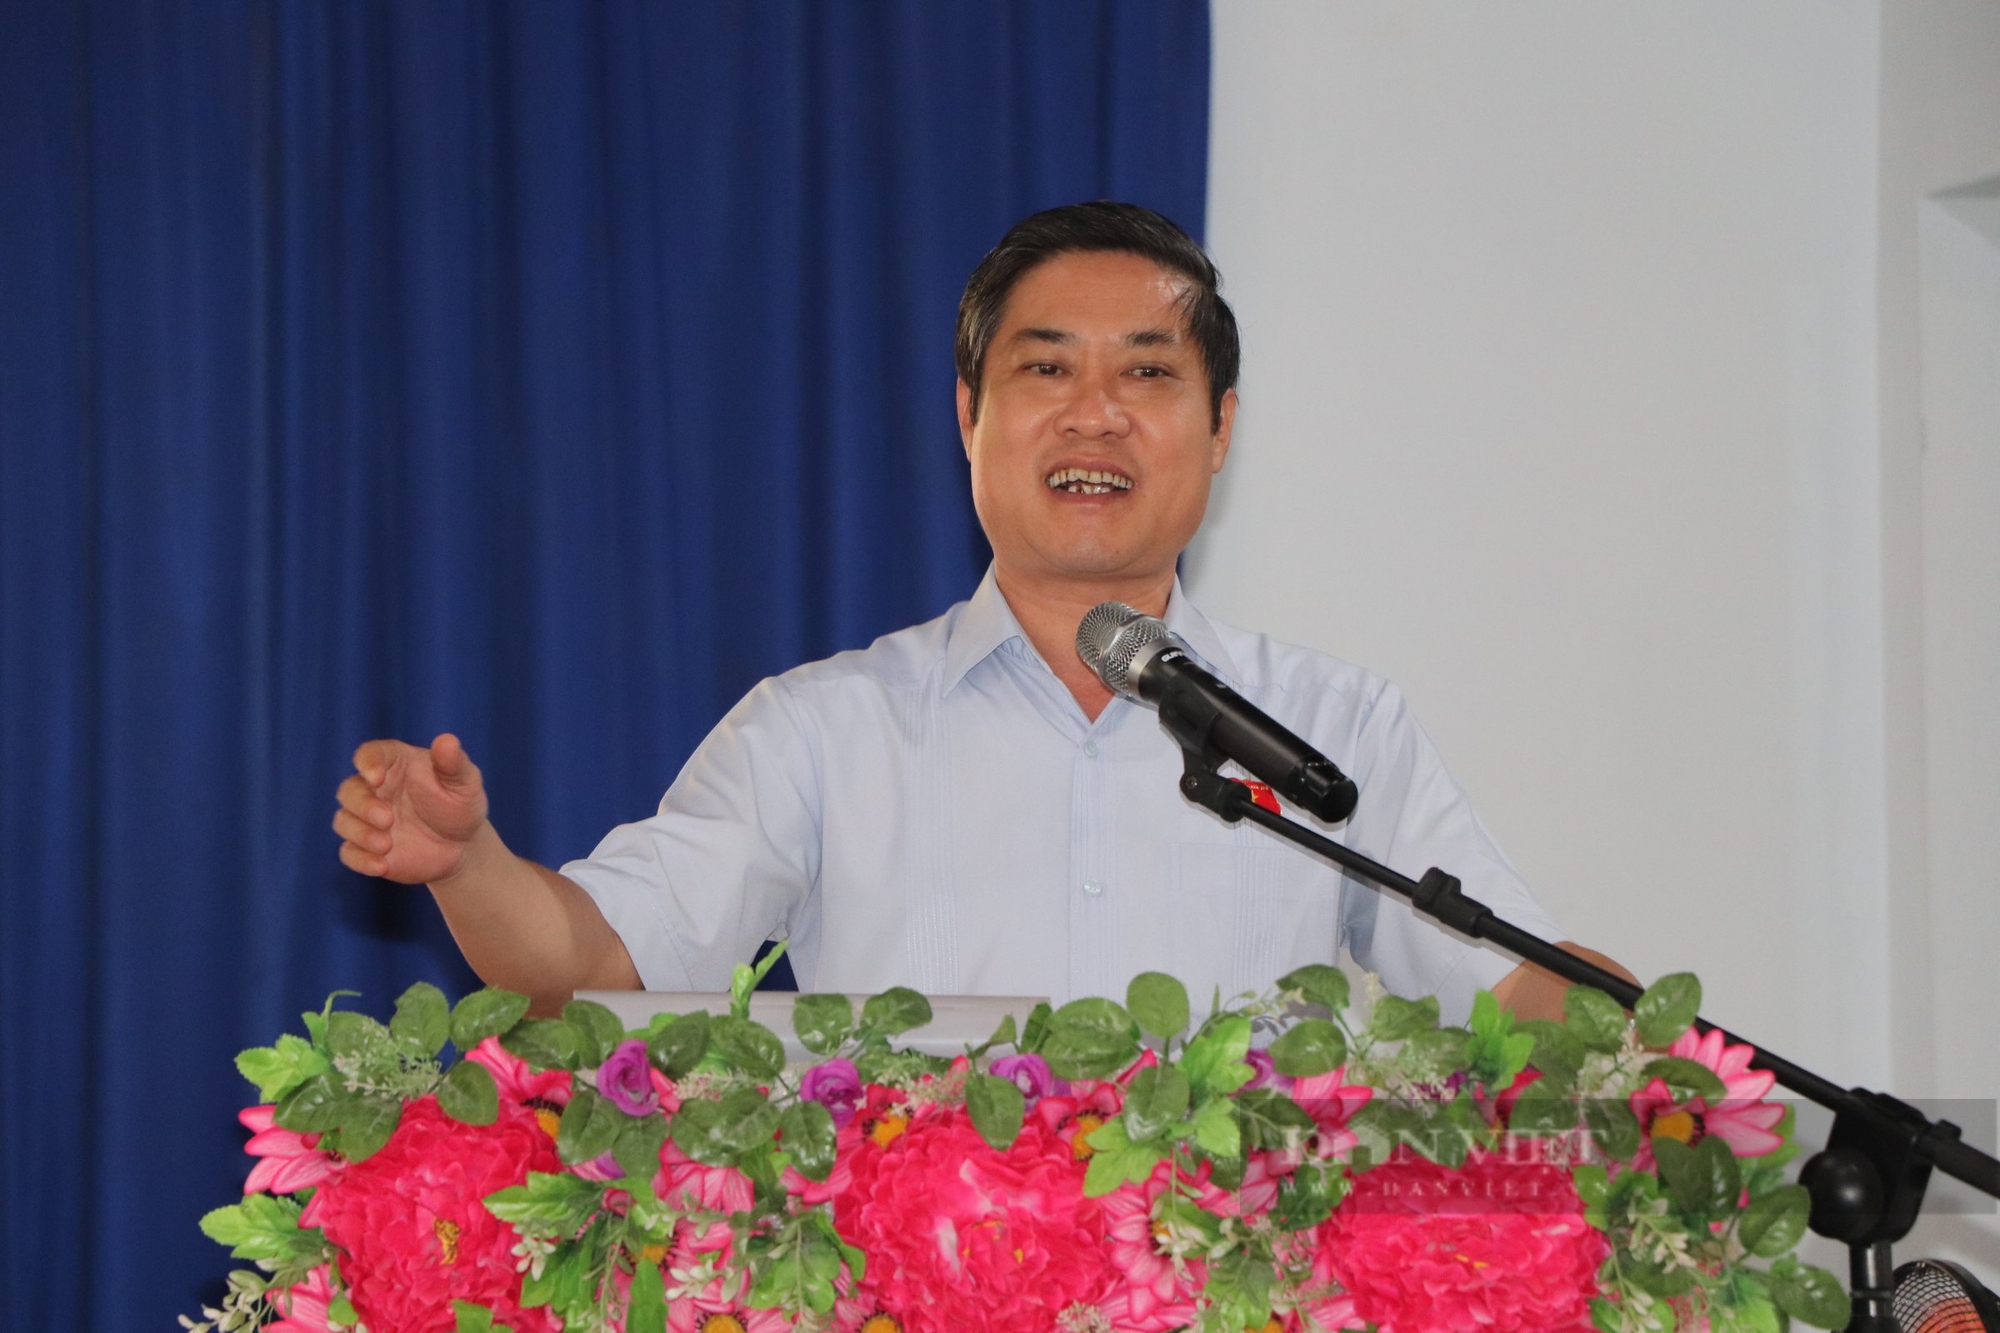 Ông Trần Nam Hưng và ông Phan Thái Bình được bầu giữ chức Phó Chủ tịch UBND tỉnh Quảng Nam- Ảnh 3.